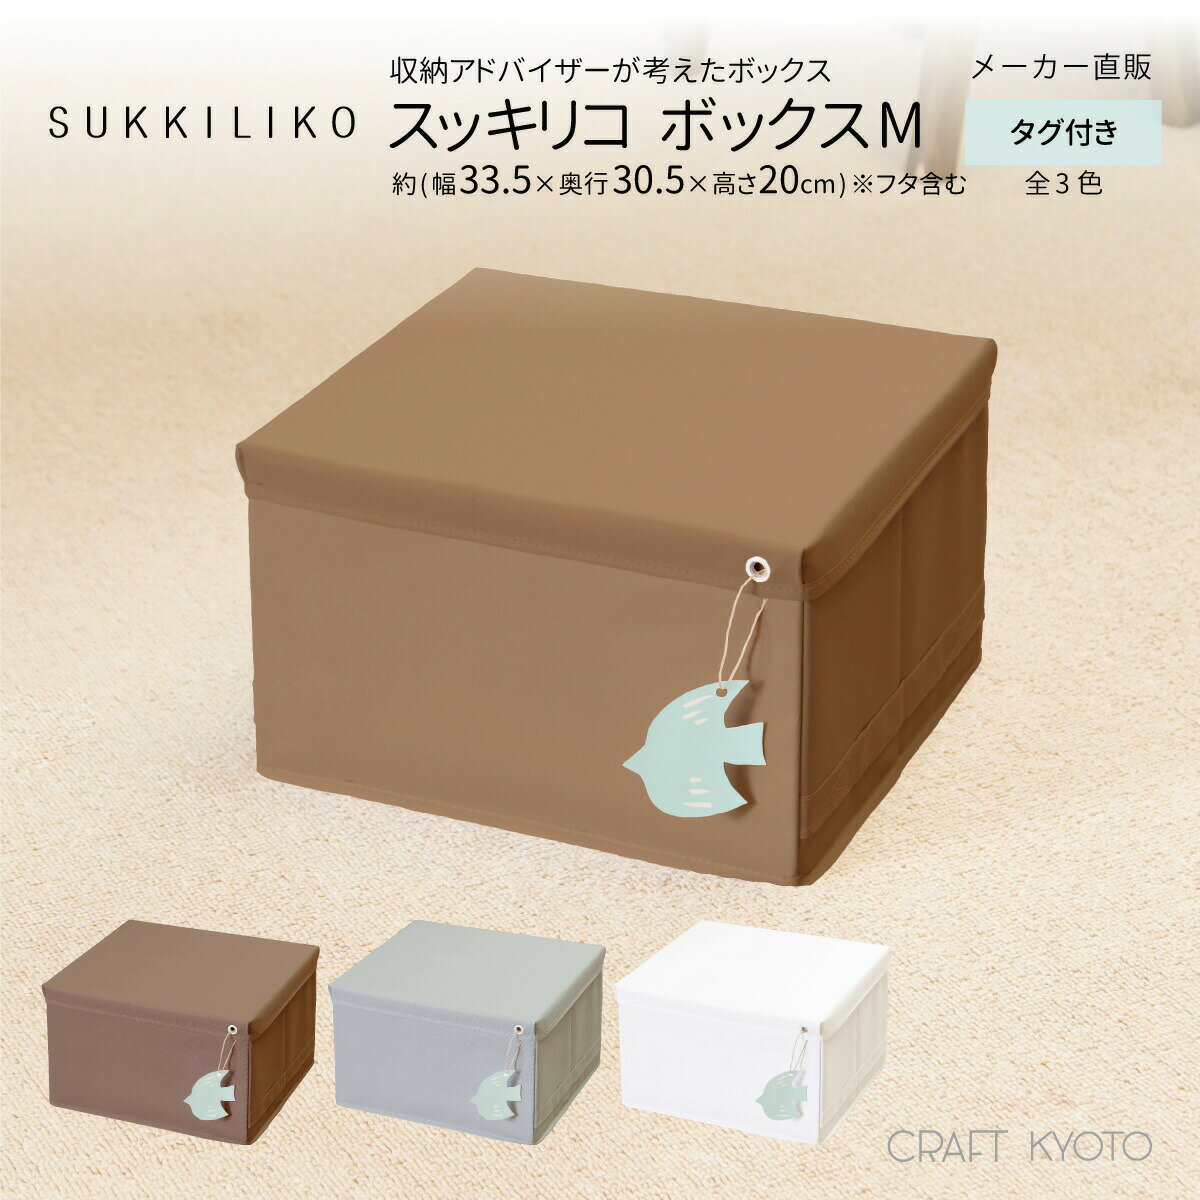 【東洋ケース公式ショップ】SUKKILIKO スッキリコ ボックス Mサイズ 全3色 収納ボックス フタ付き 積み重ね ボックス ケース 収納ケース スタッキング おもちゃ ティッシュ/ オムツ ストック …